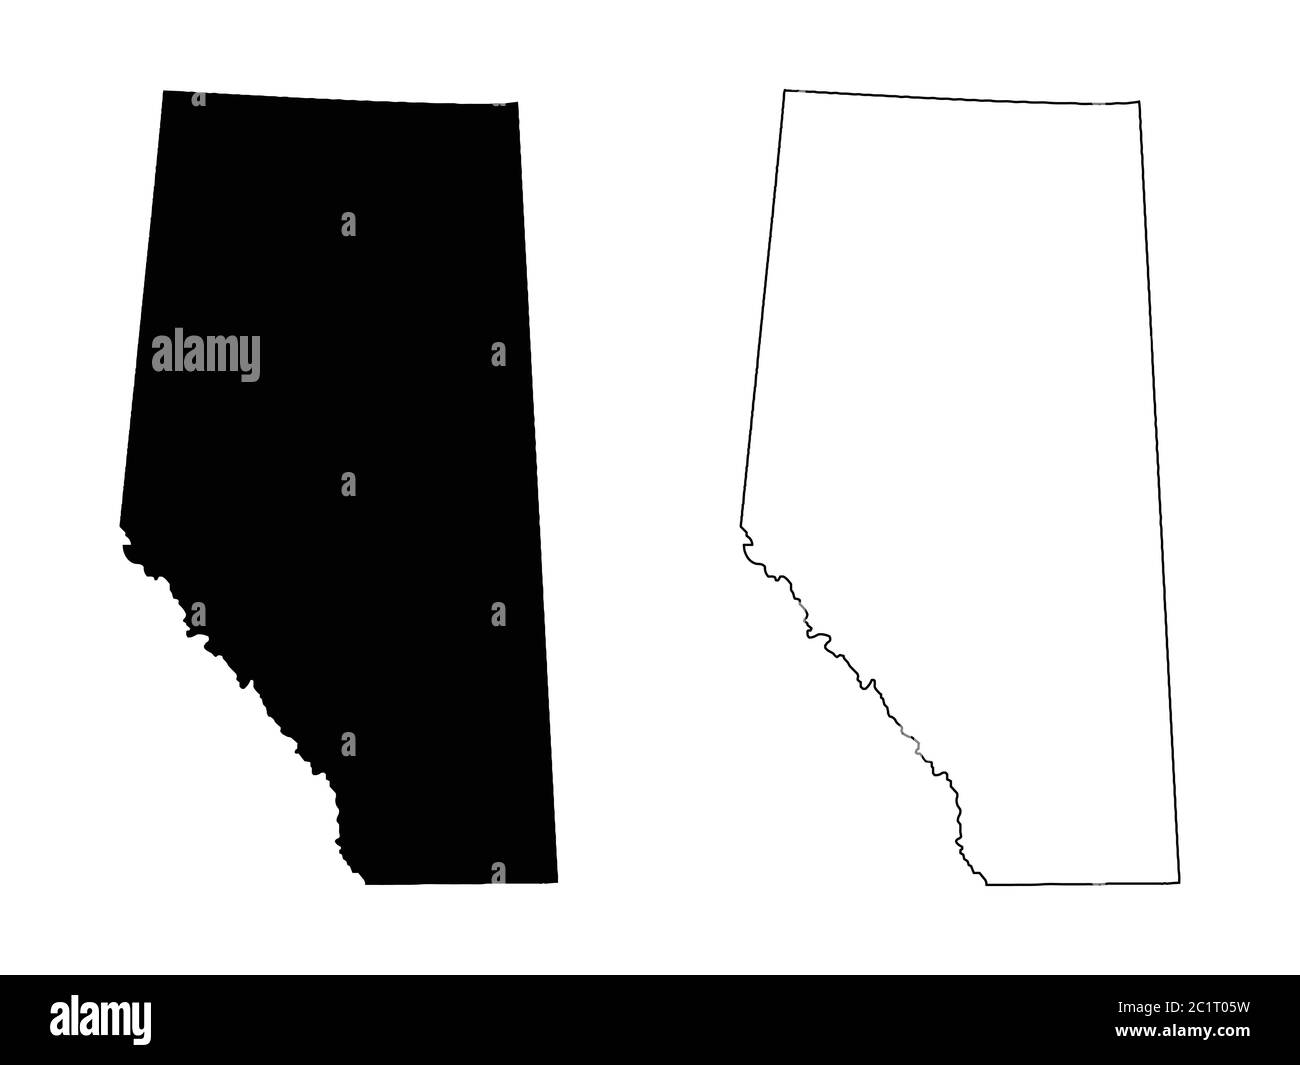 Mapa de la provincia y el territorio de Alberta. Ilustración y contorno en negro. Aislado sobre un fondo blanco. Vector EPS Ilustración del Vector